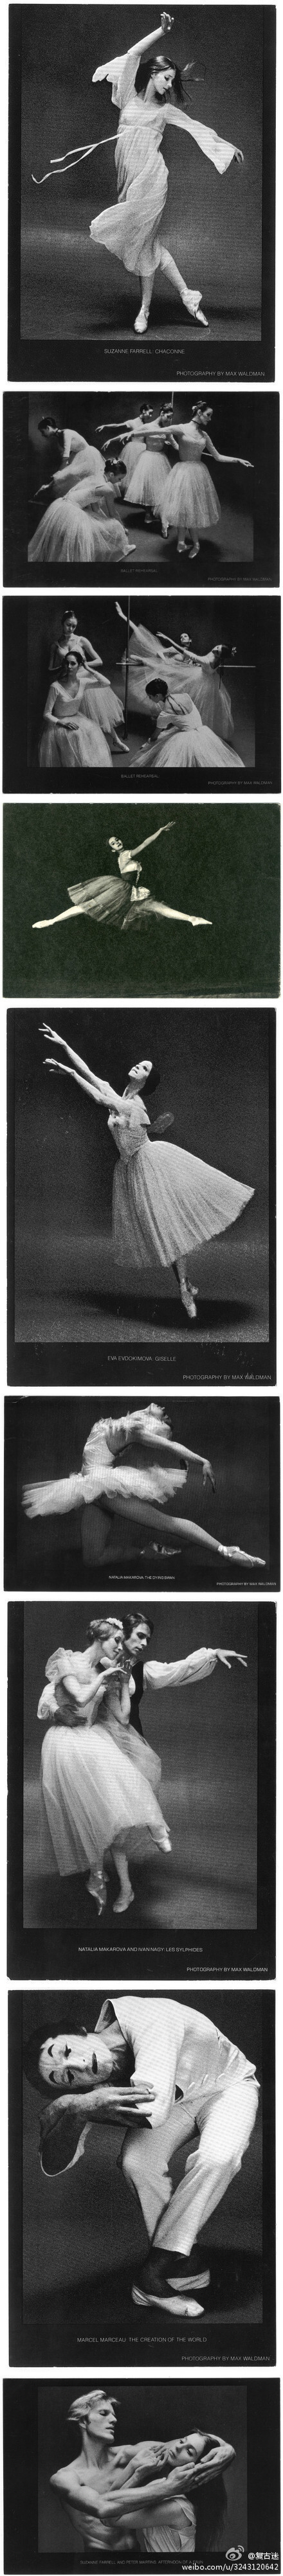 时间一点点流逝，但是美被凝固了。黑白色的芭蕾舞。上世纪中期杰出芭蕾舞演员在演出经典作品时的绝美瞬间。